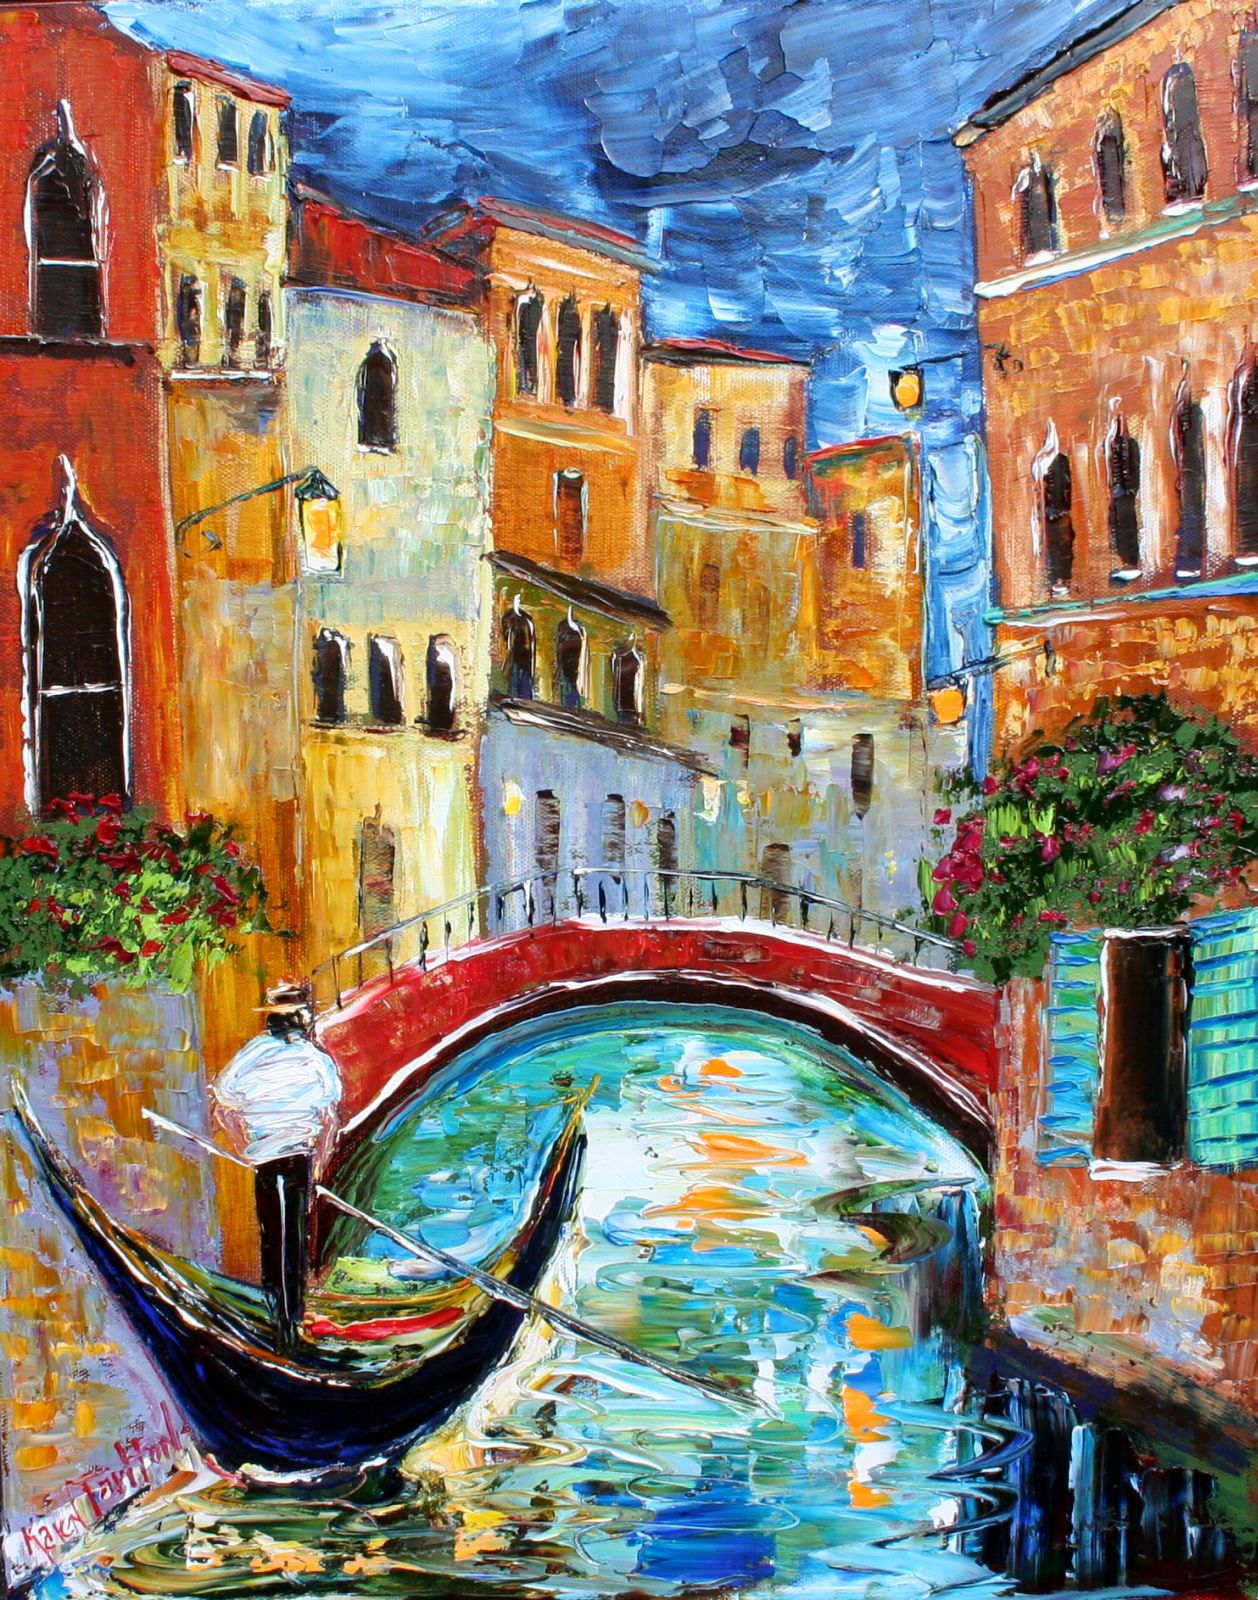 Tarlton Original Oil Painting Venice Moonlight art eBay 015i